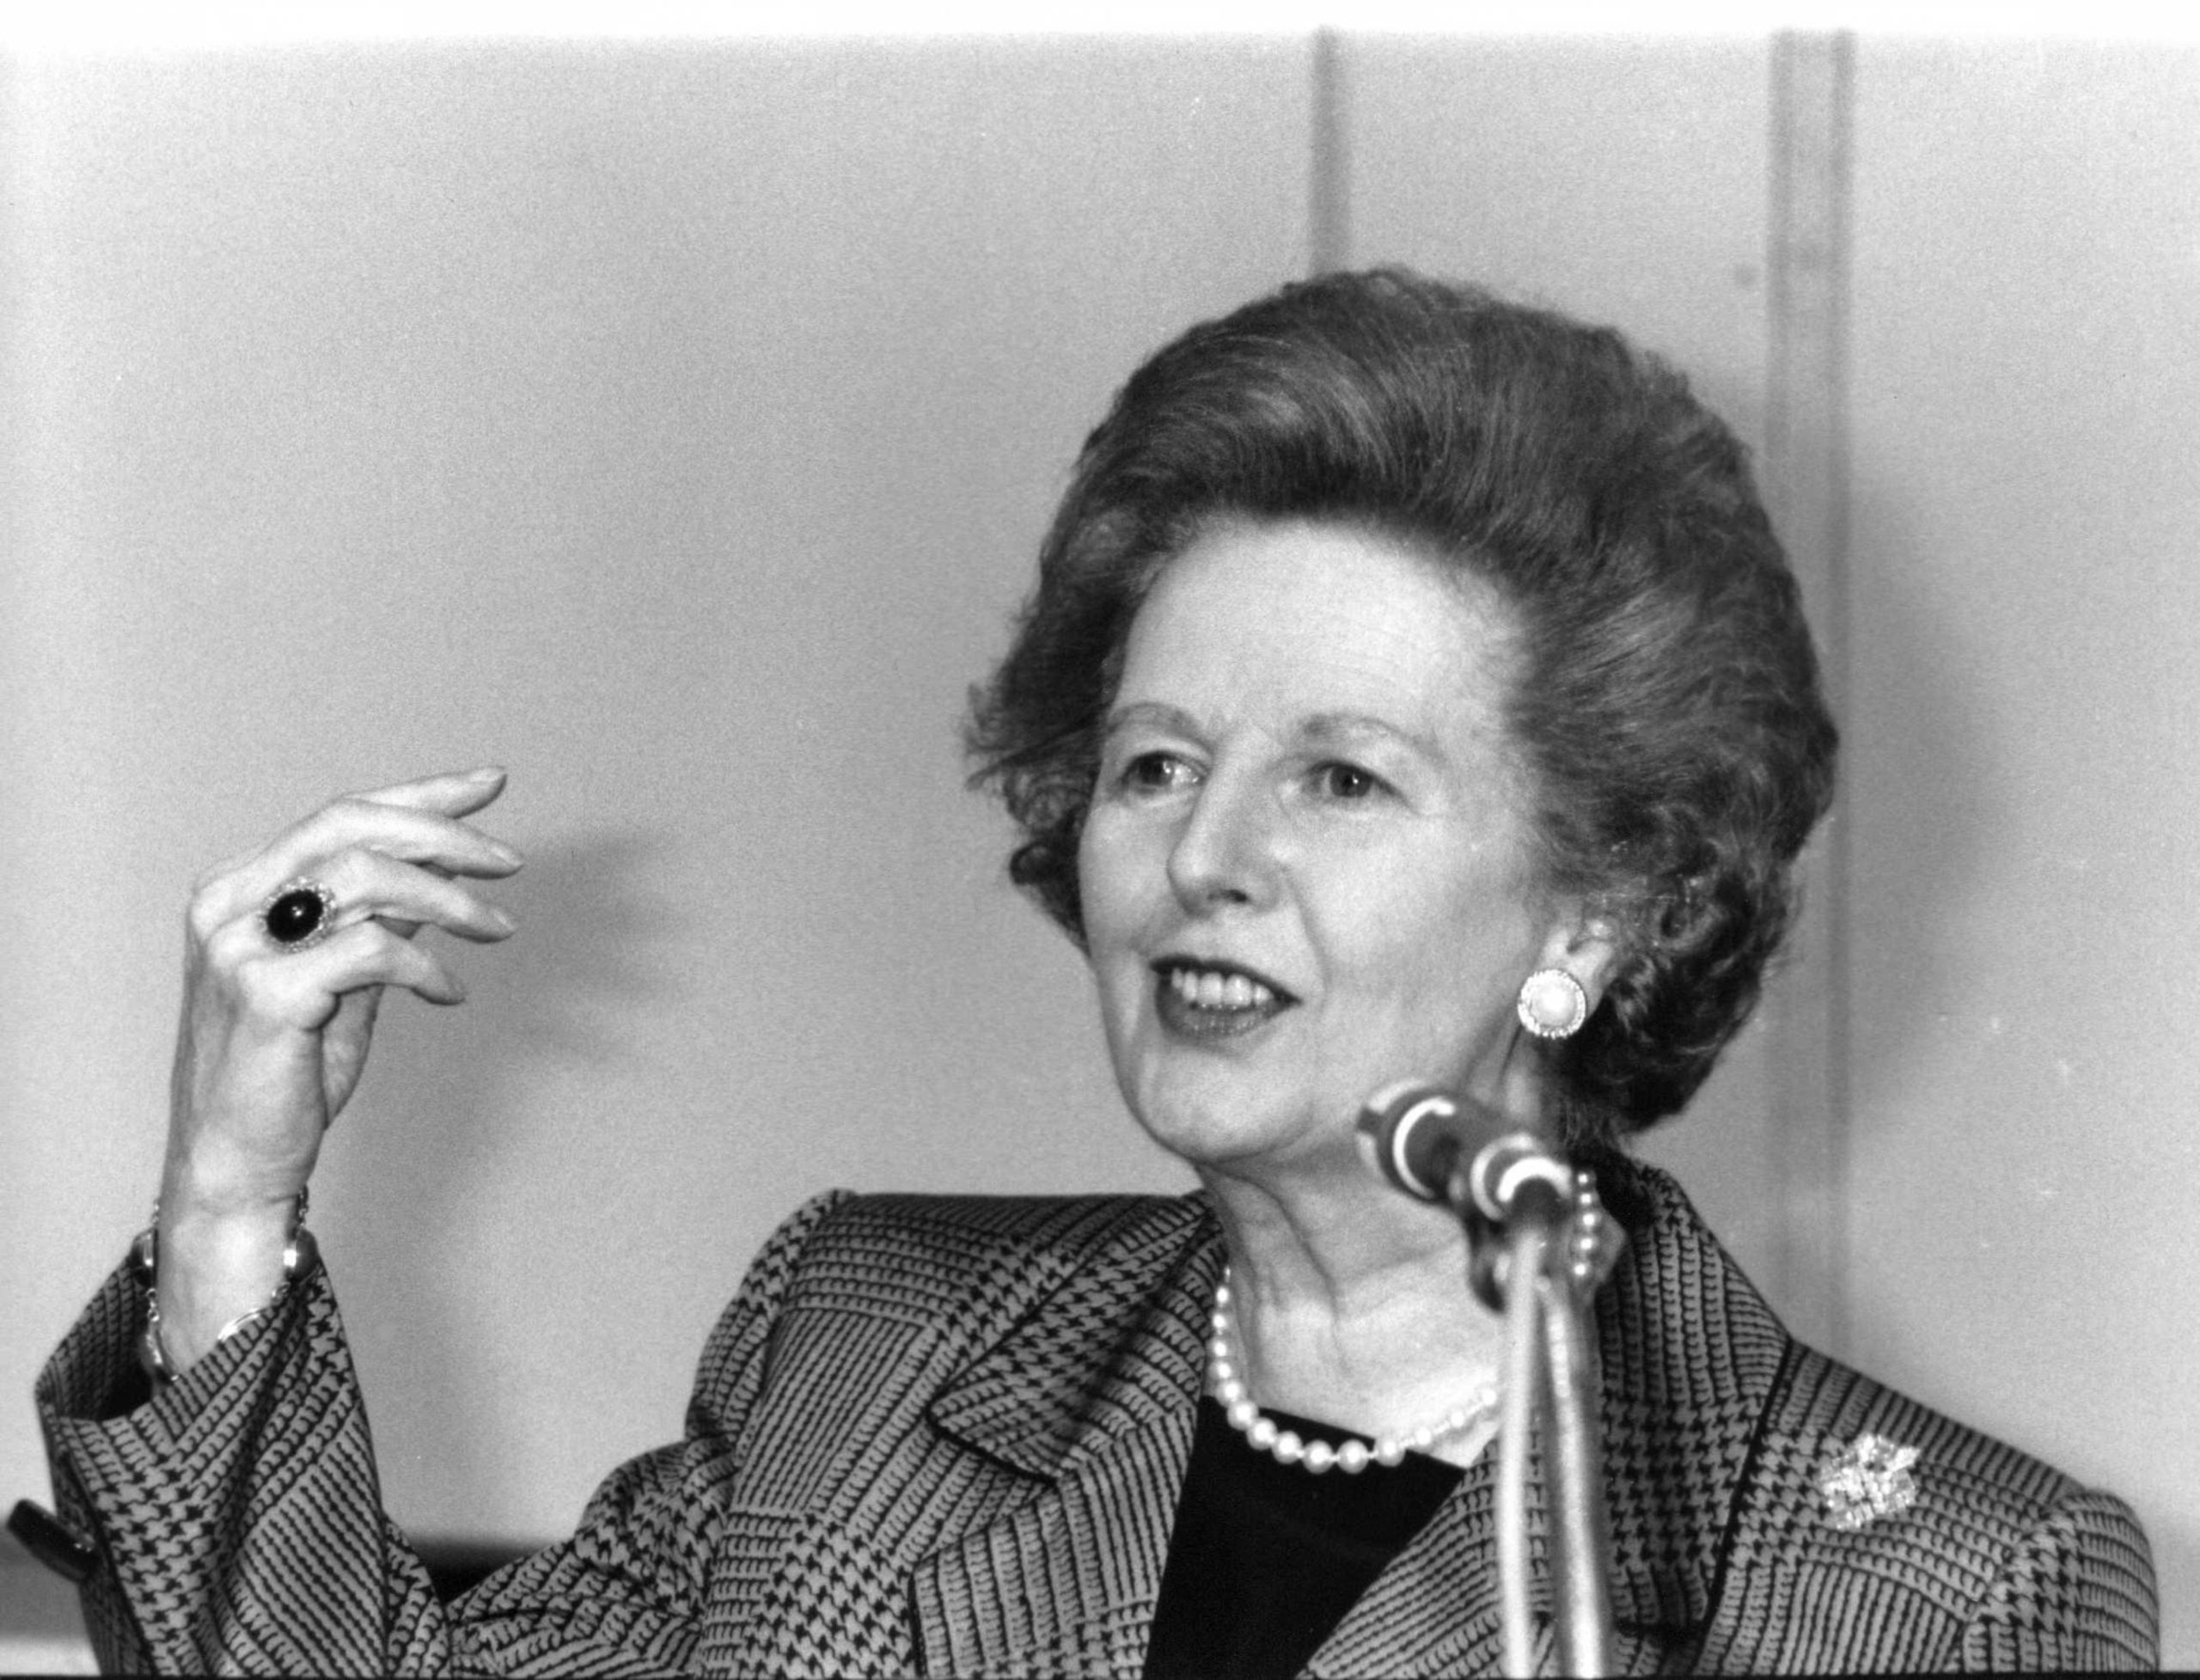 La Dame de fer, Margaret Thatcher, un profil UN α ?